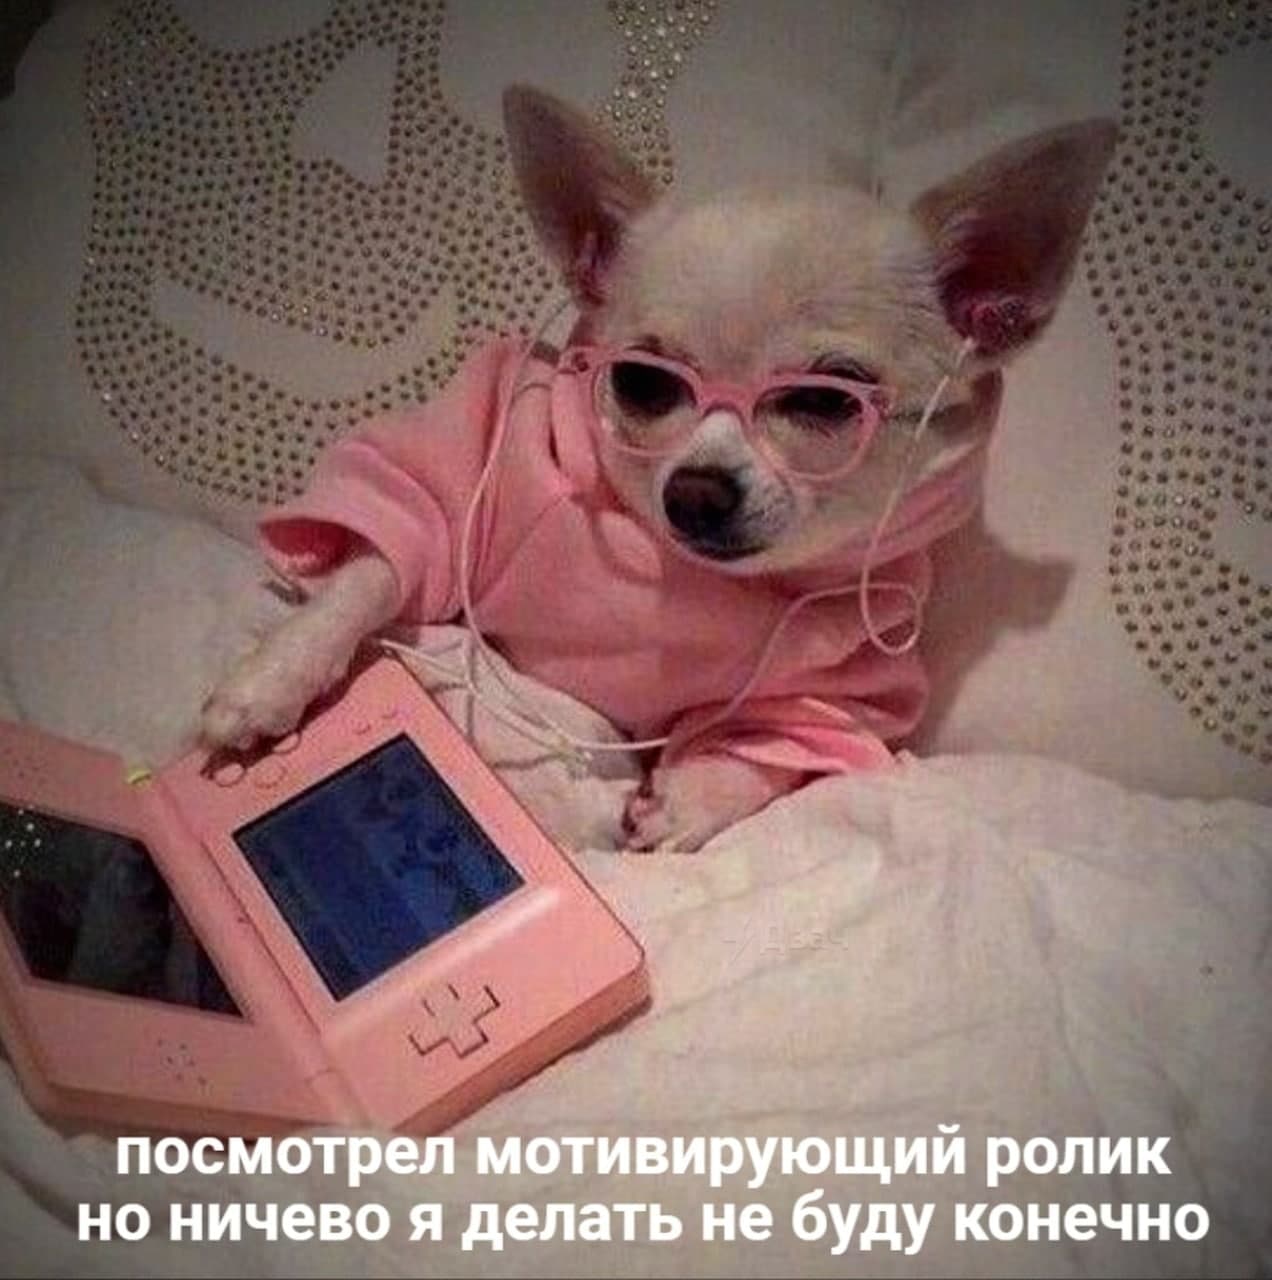 Фото © Twitter / RussianMemesLtd